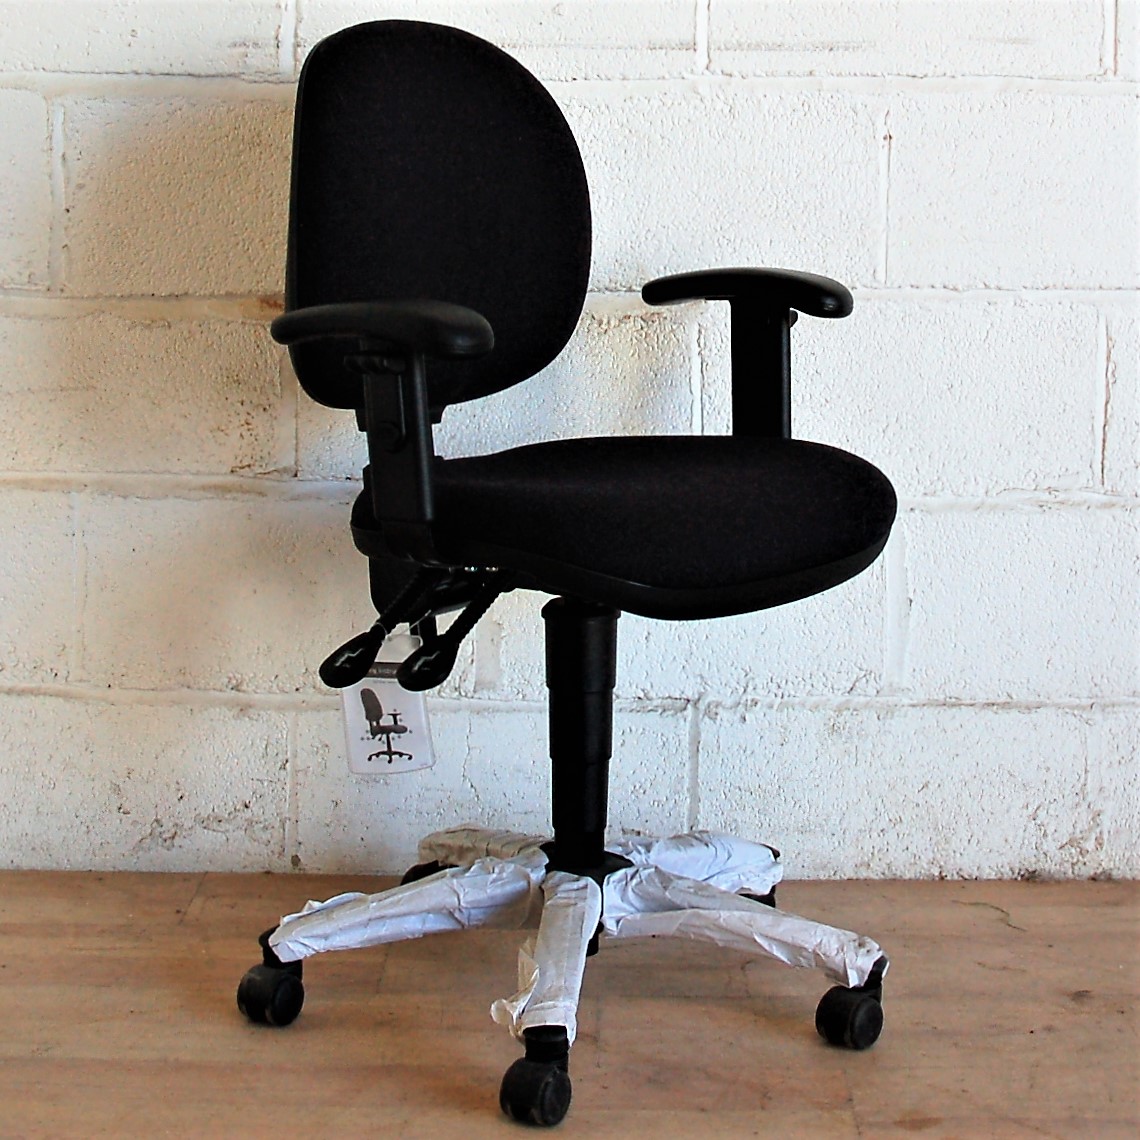 Typist Chair Charcoal Adjustable 2108 Typist Chair